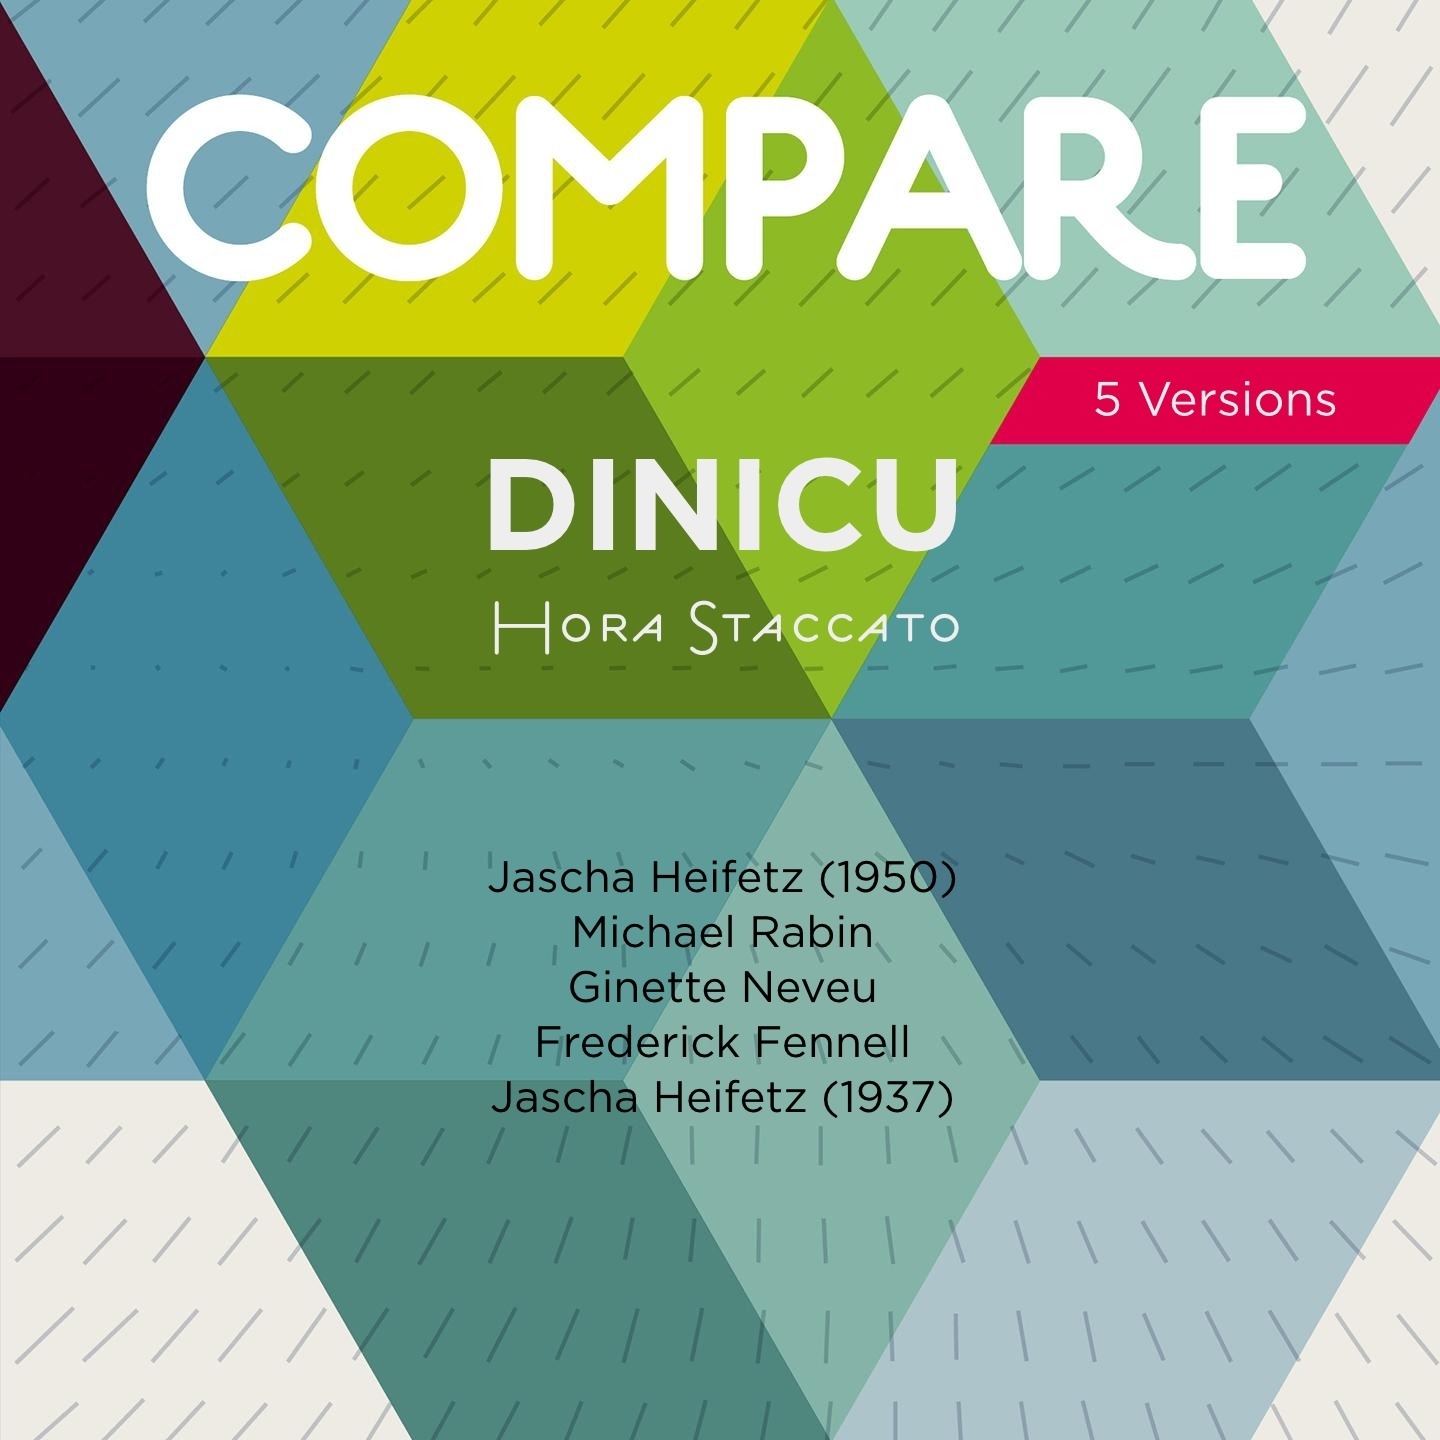 Dinicu: Hora Staccato, Jascha Heifetz vs. Michael Rabin vs. Ginette Neveu vs. Frederick Fennell